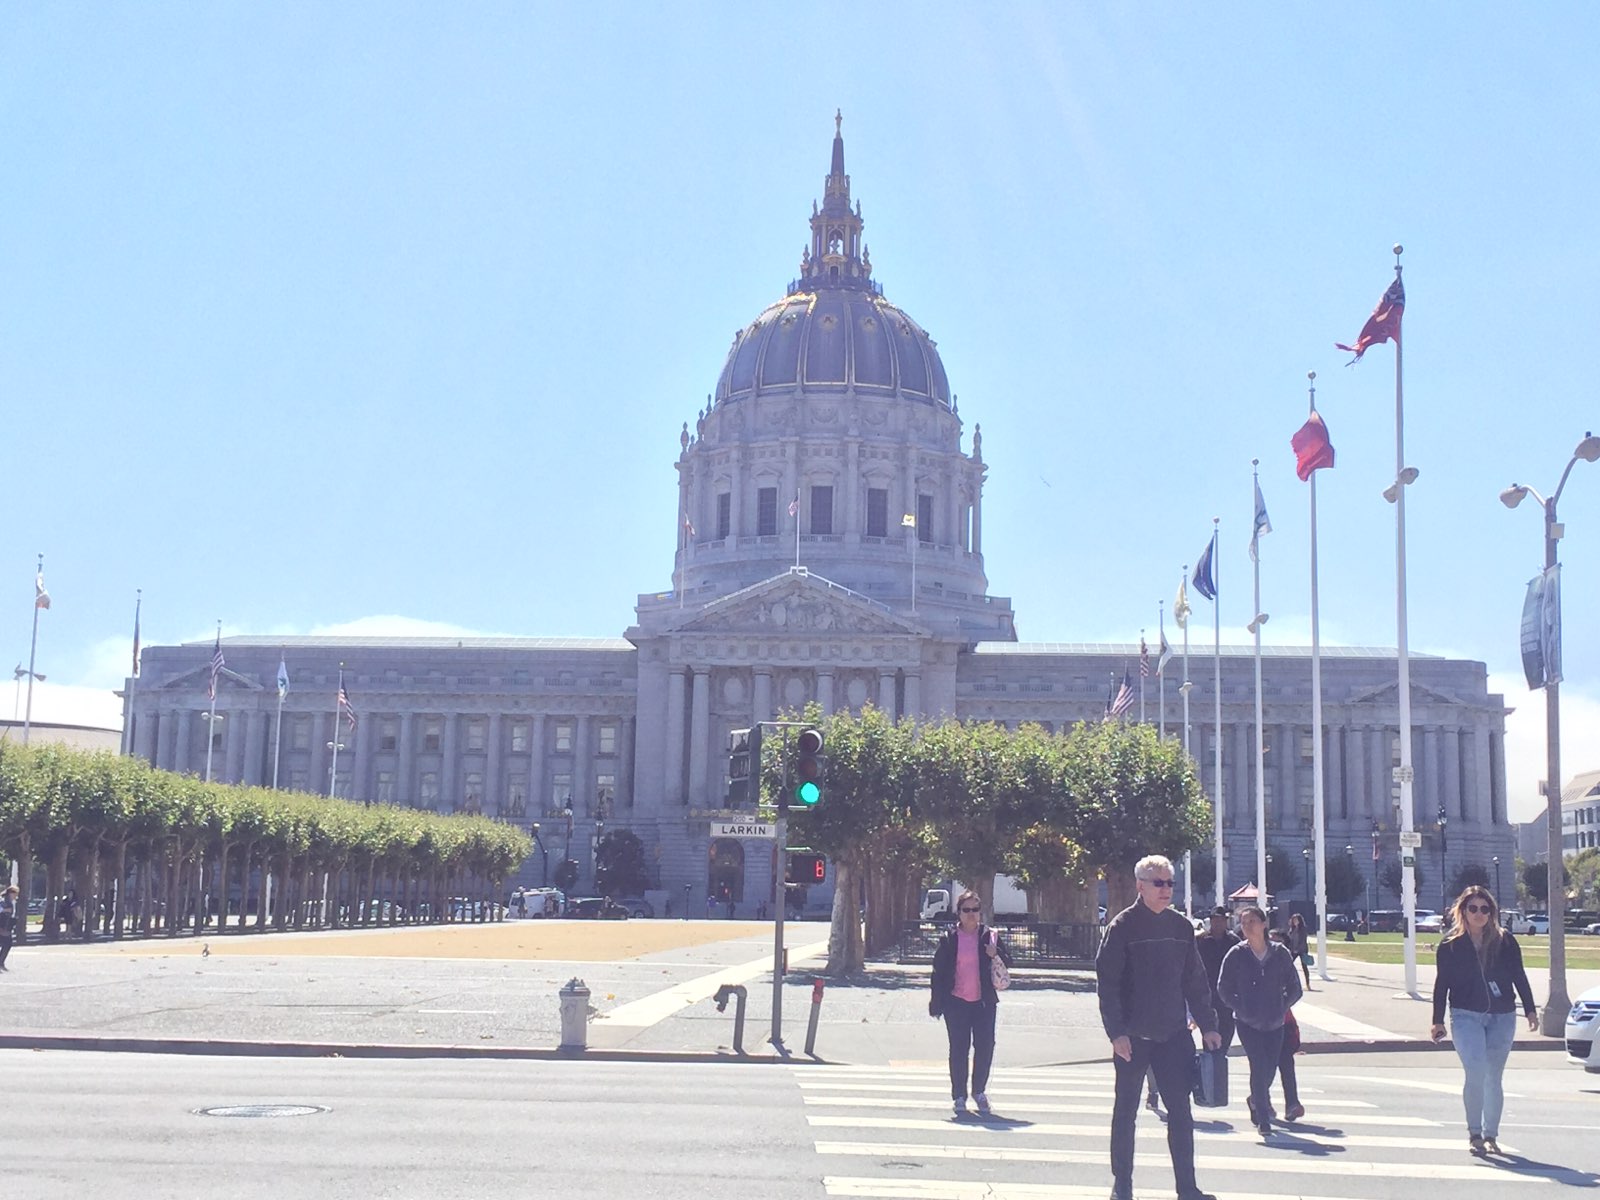 旧金山市政厅是美国旧金山市政中心的政府办公大楼，拥有鲜明的学院派建筑风